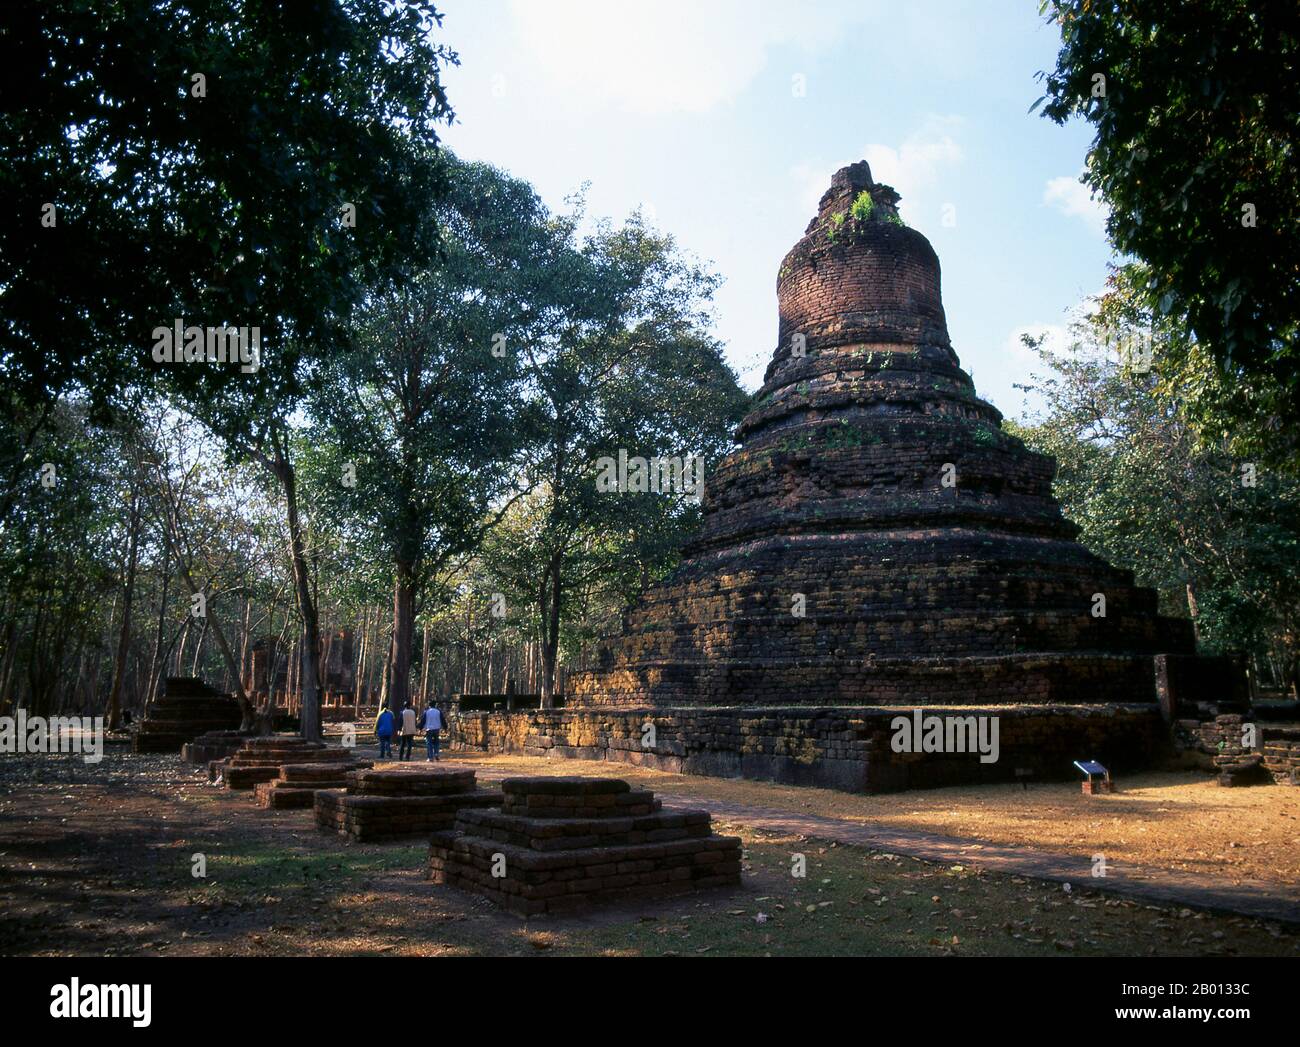 Thailandia: Chedi vicino a Wat Sri Iriyabot, Kamphaeng Phet Parco storico. Kamphaeng Phet Historical Park nel centro della Thailandia era una volta parte del regno di Sukhothai che fiorì nel XIII e XIV secolo. Il regno di Sukhothai fu il primo dei regni tailandesi. Foto Stock